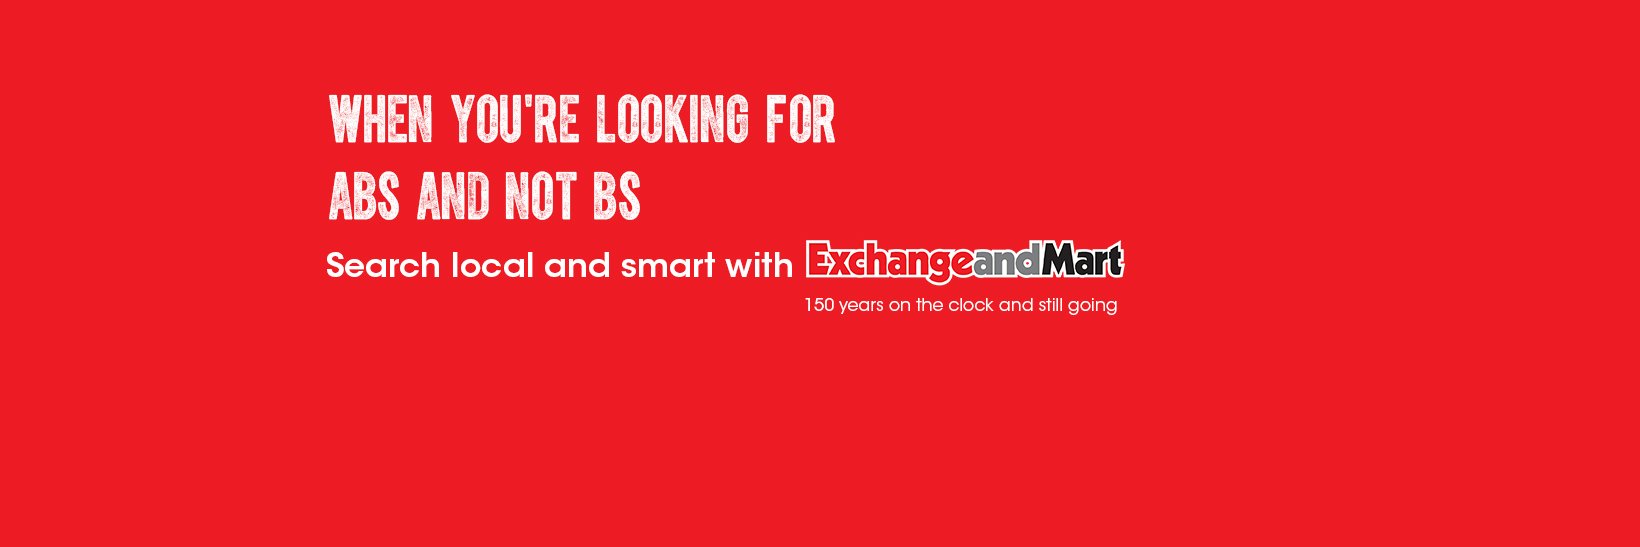 Exchange and Mart